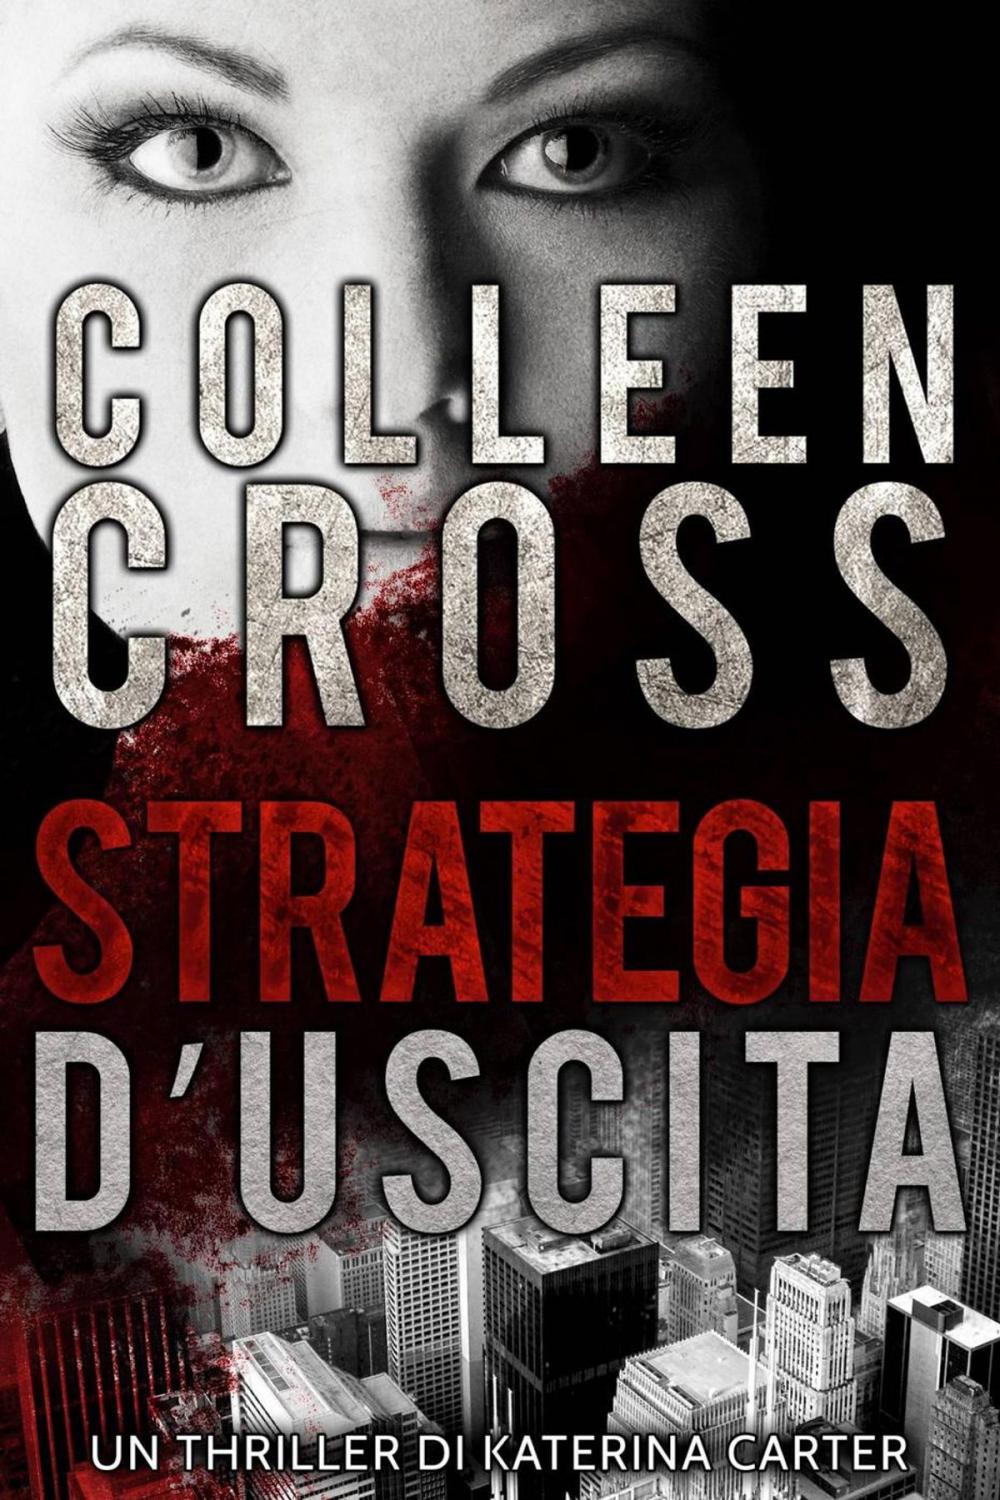 Big bigCover of Strategia d'Uscita : Un thriller di Katerina Carter